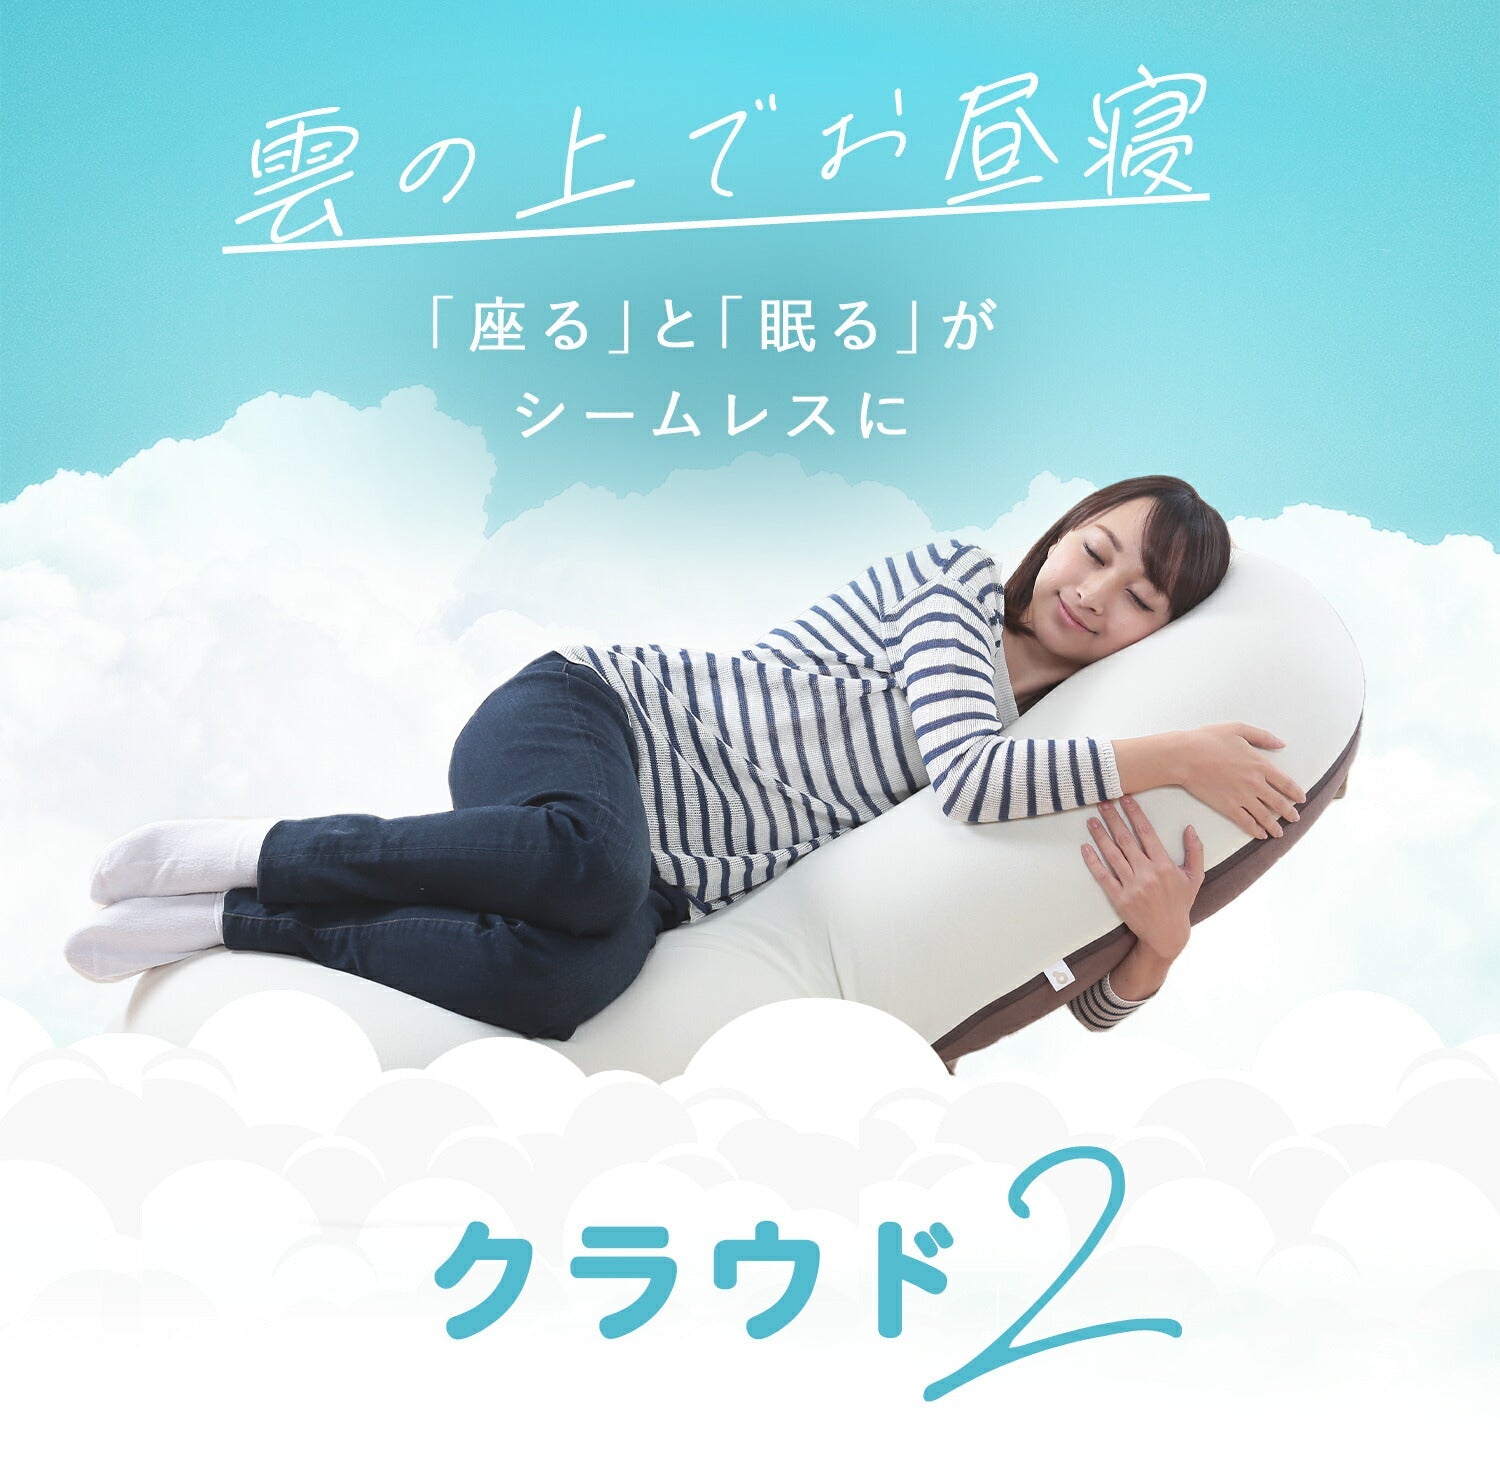 CLOUD2-クラウド2- 眠ると座るをシームレスに 雲の上でお昼寝 新感覚 